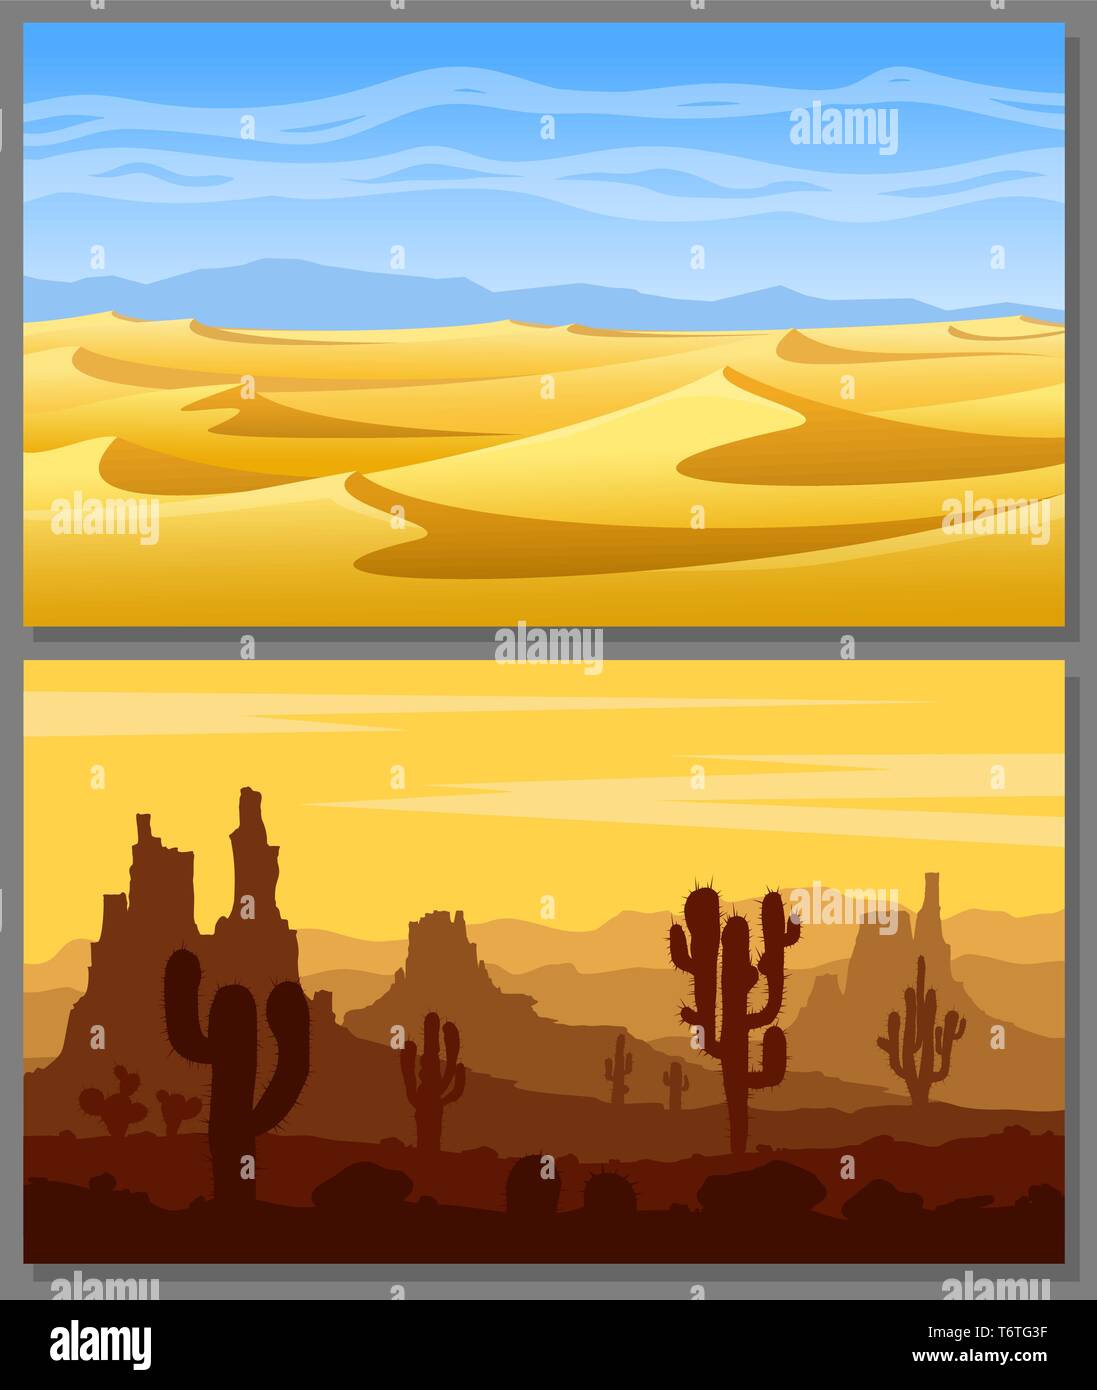 Paesaggi desertici vector set. Illustrazione Vettoriale